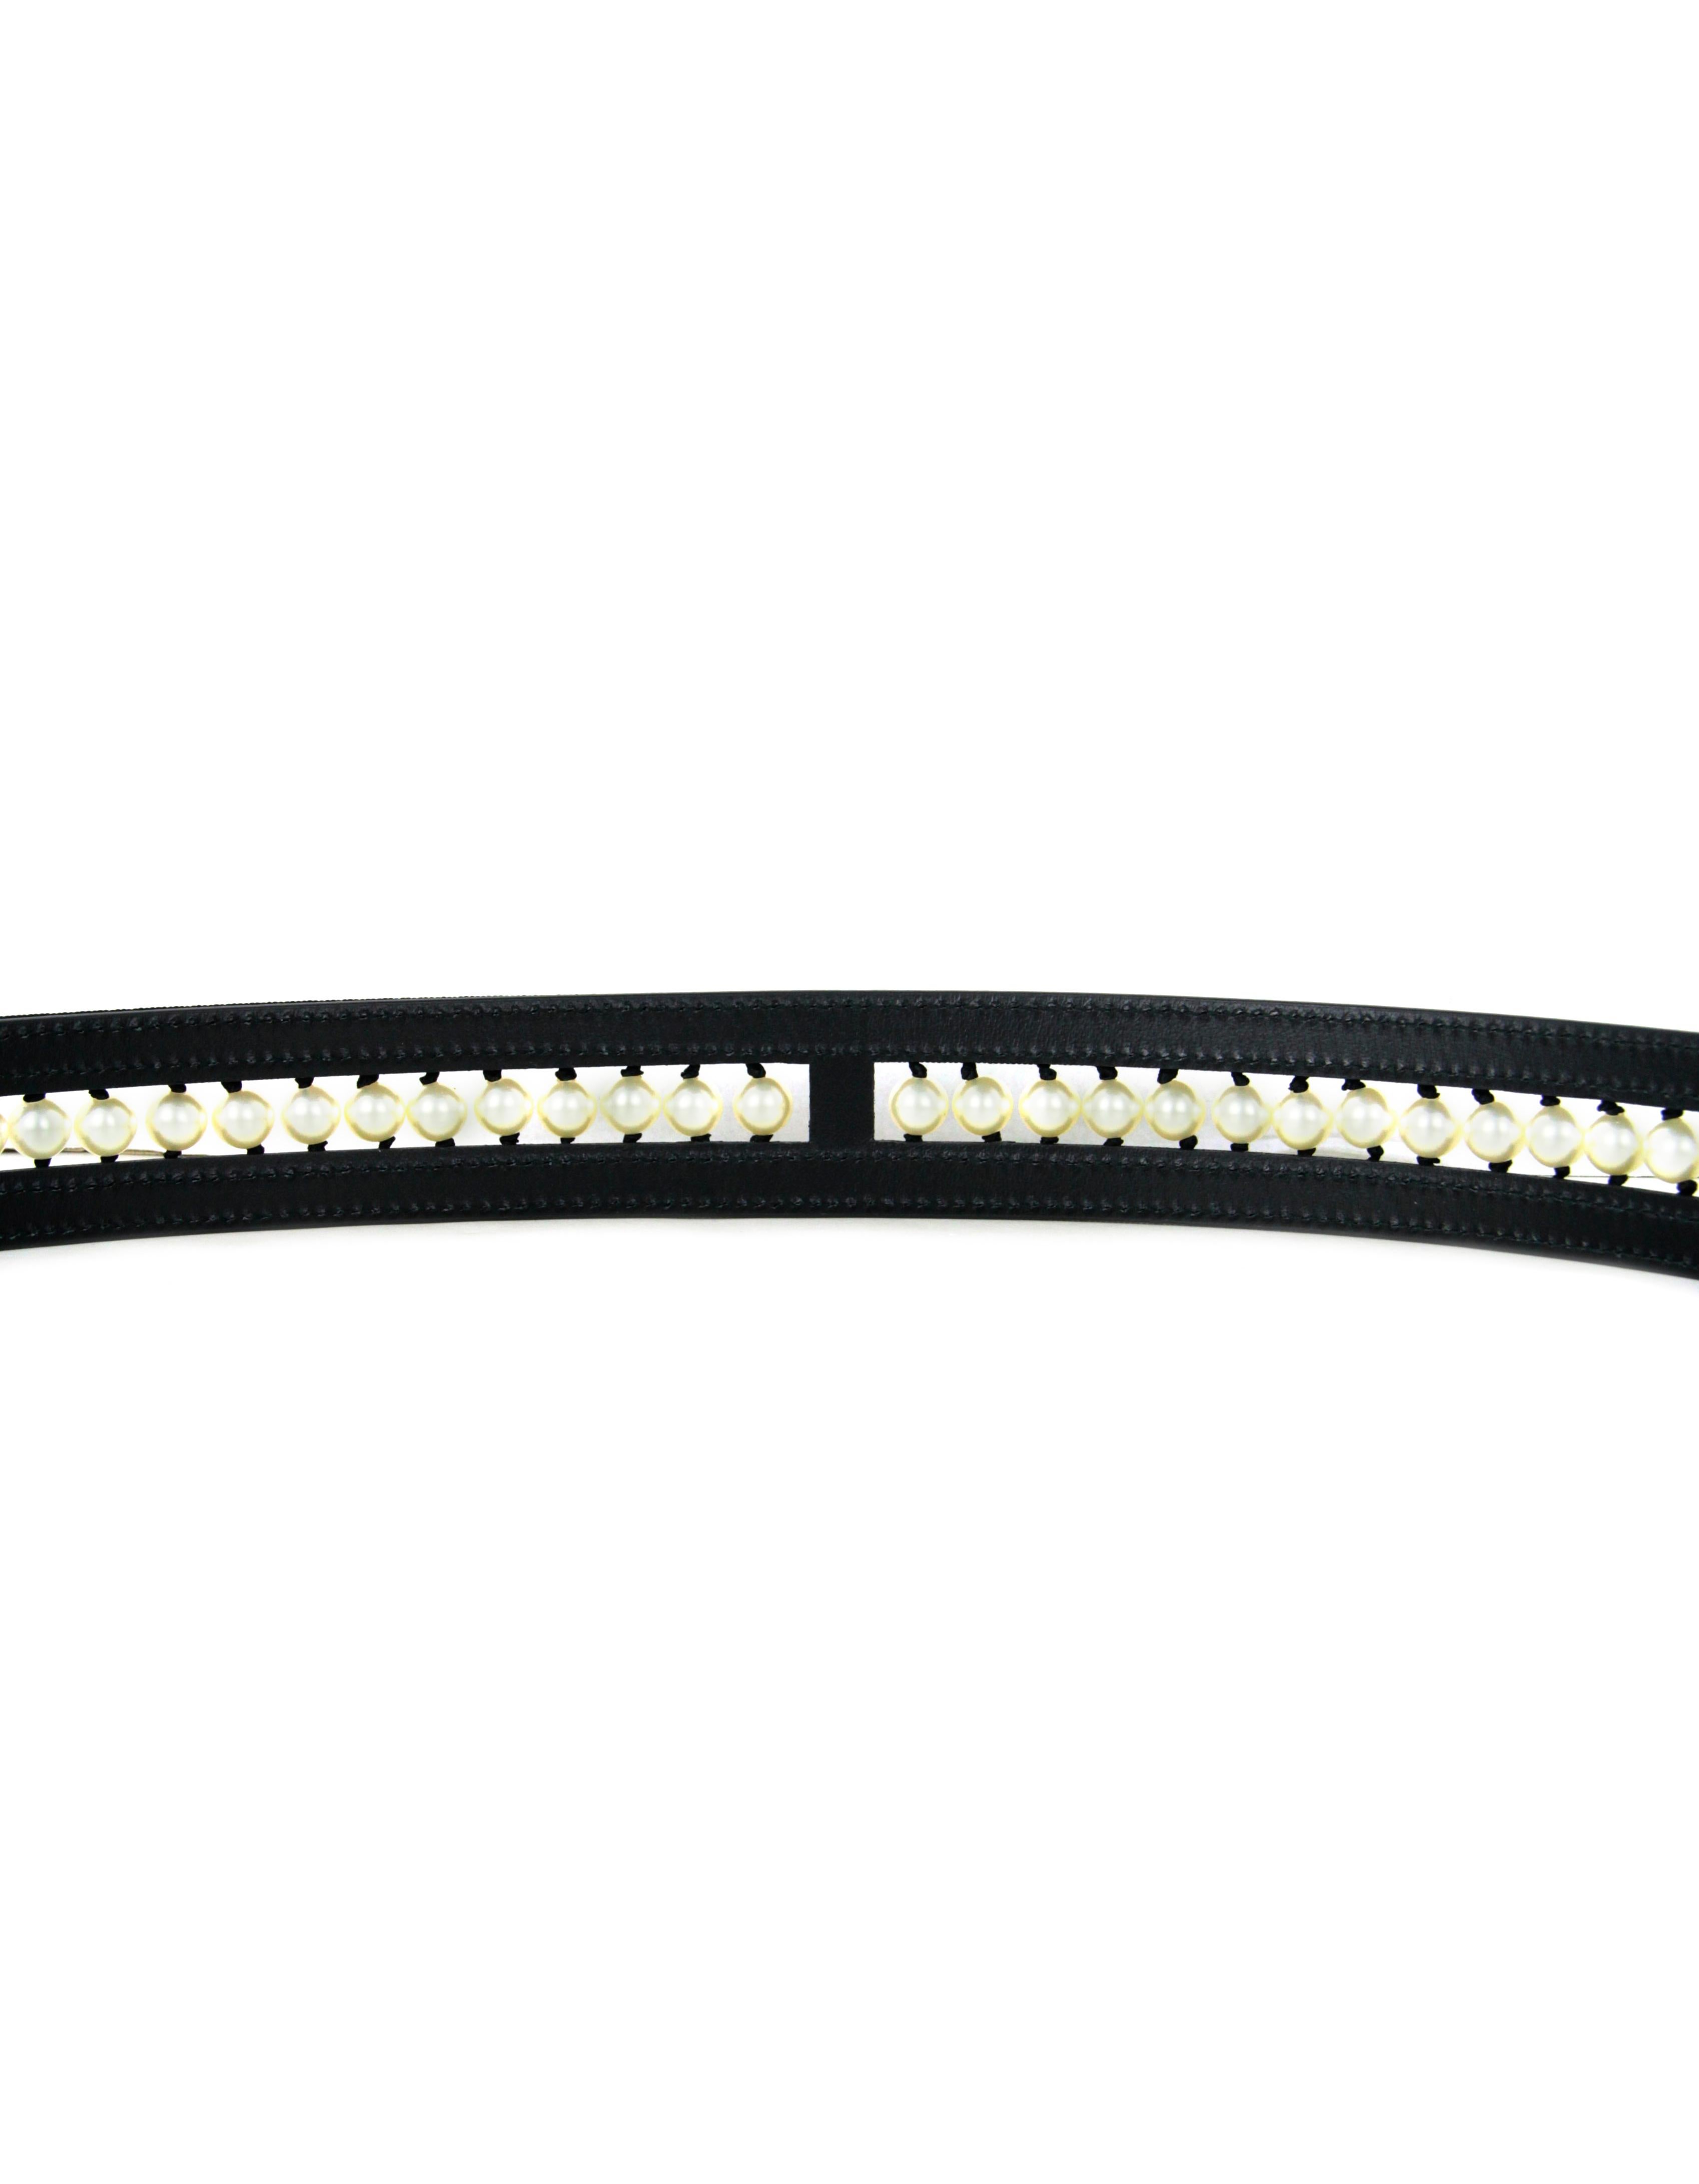 Women's Chanel NWT Black Leather & Grosgrain Pearl Belt sz 90 rt. $1, 850